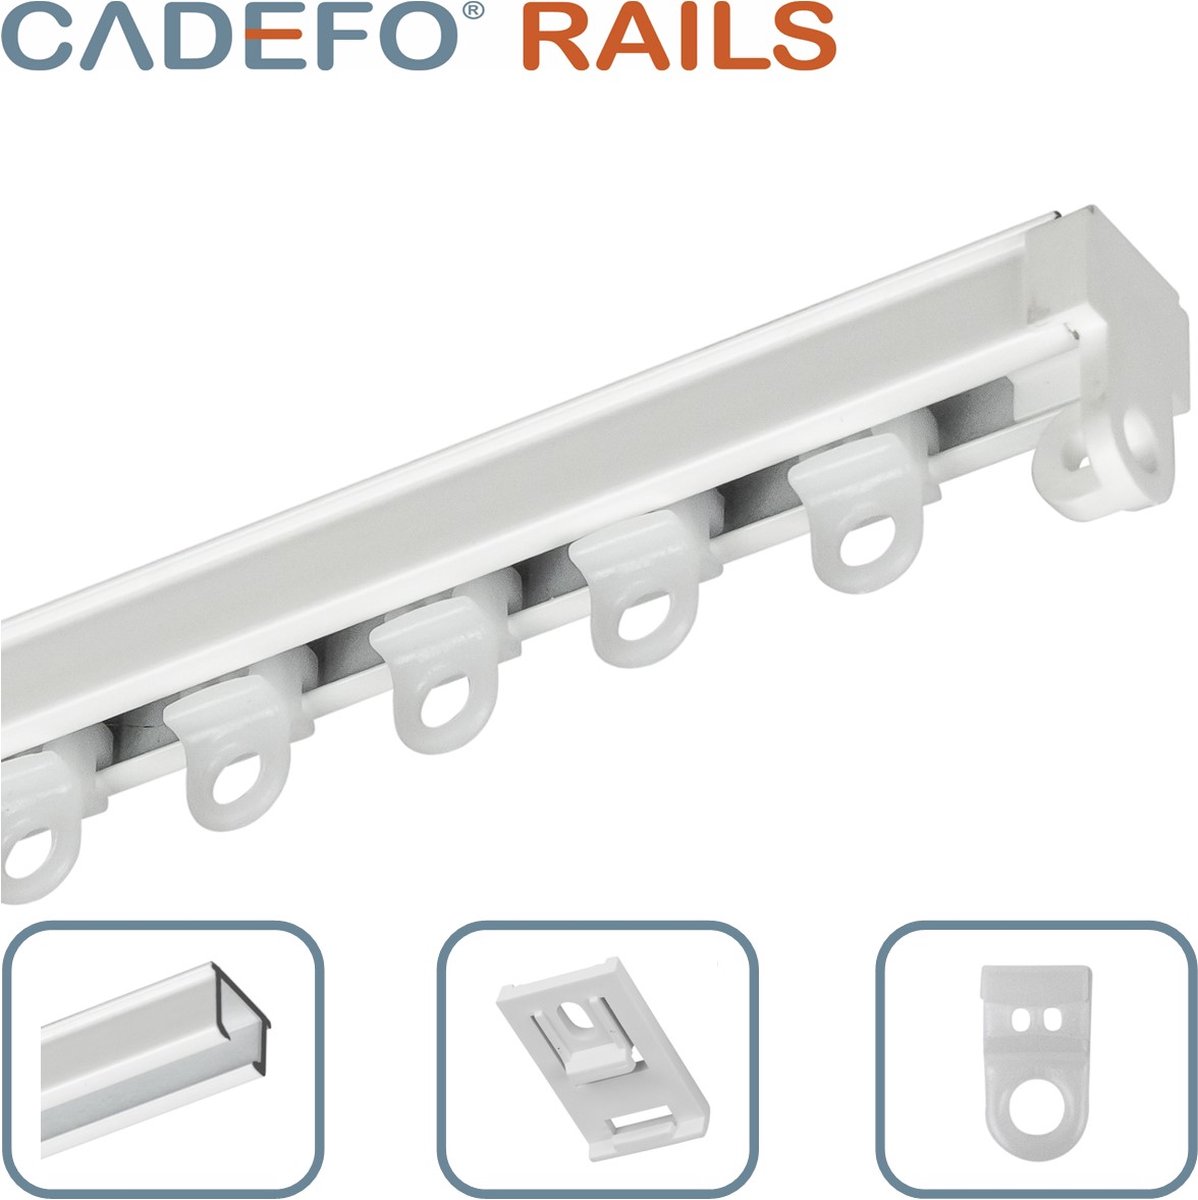 CADEFO RAILS (301 - 350 cm) Gordijnrails - Compleet op maat! - UIT 1 STUK - Leverbaar tot 6 meter - Plafondbevestiging - Lengte 334 cm